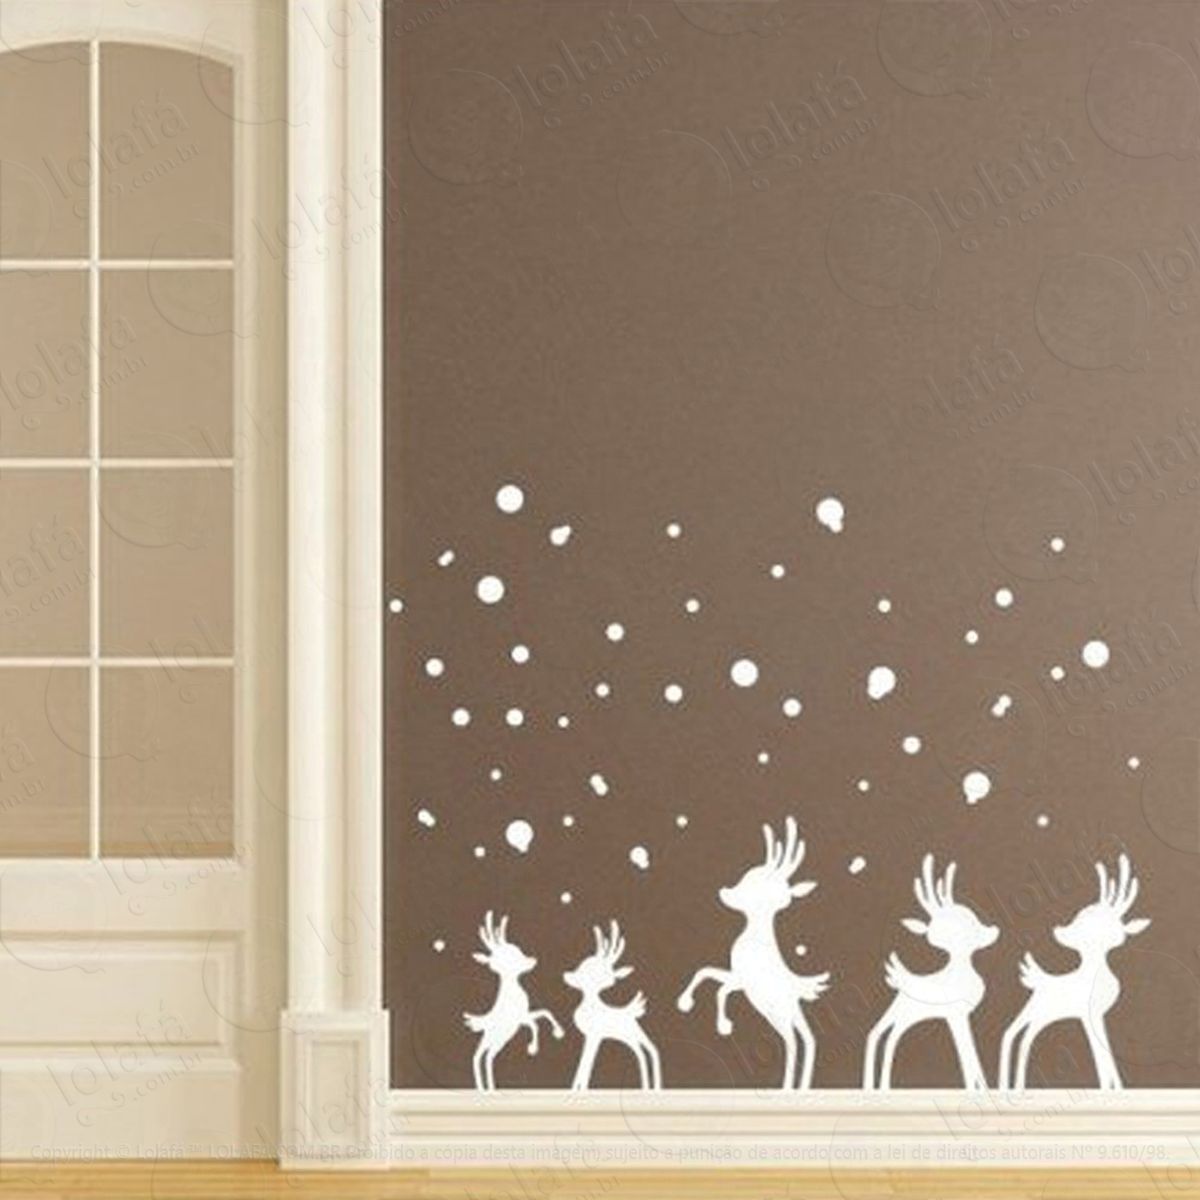 renas adesivo de natal para vitrine, parede, porta de vidro - decoração natalina mod:234